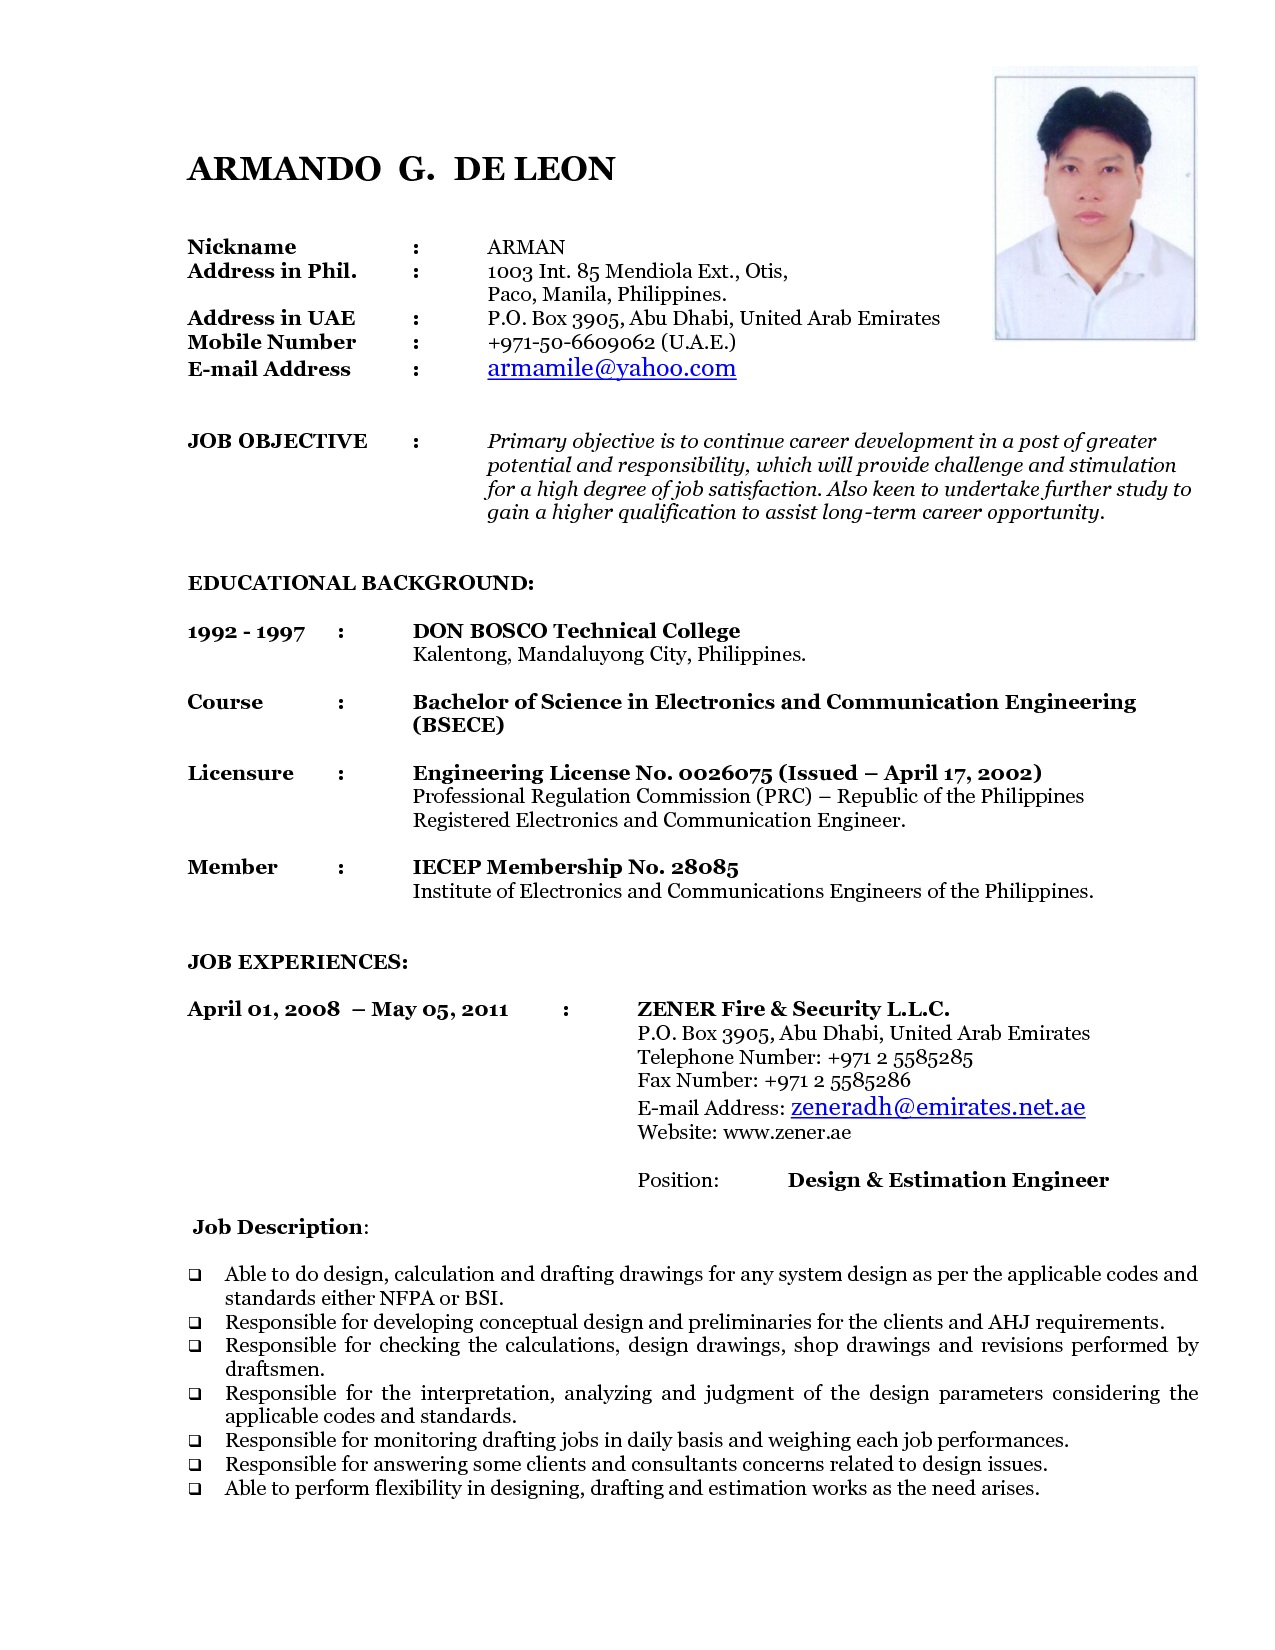 Resume Format Uae 